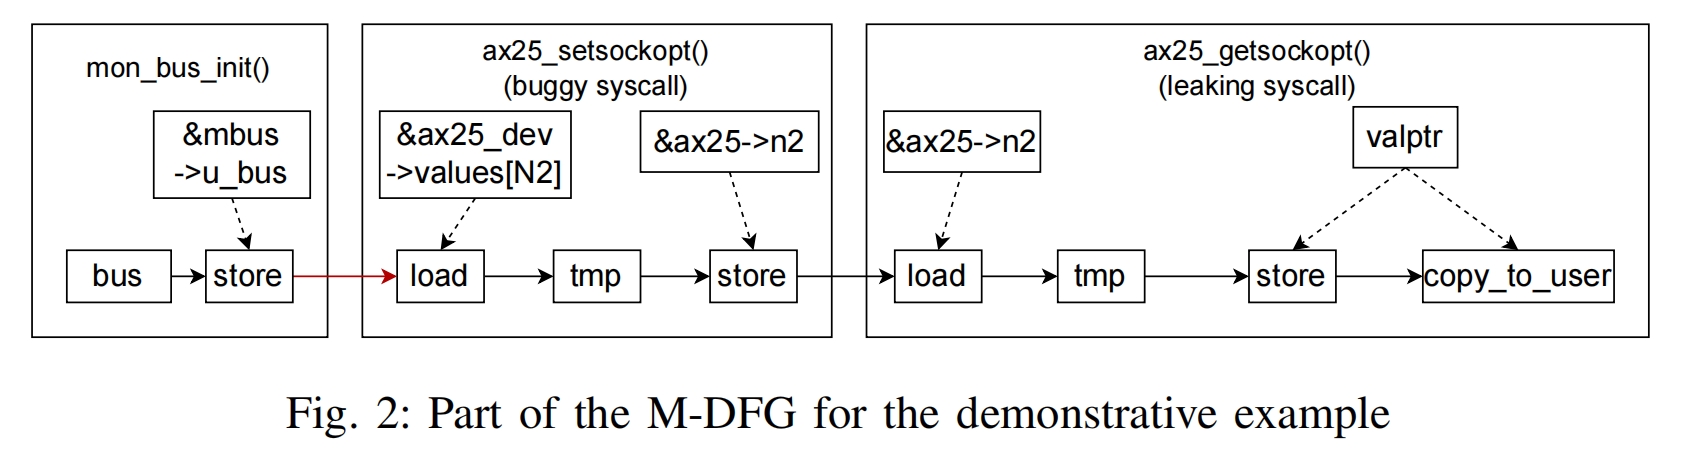 3-M-DFG_example